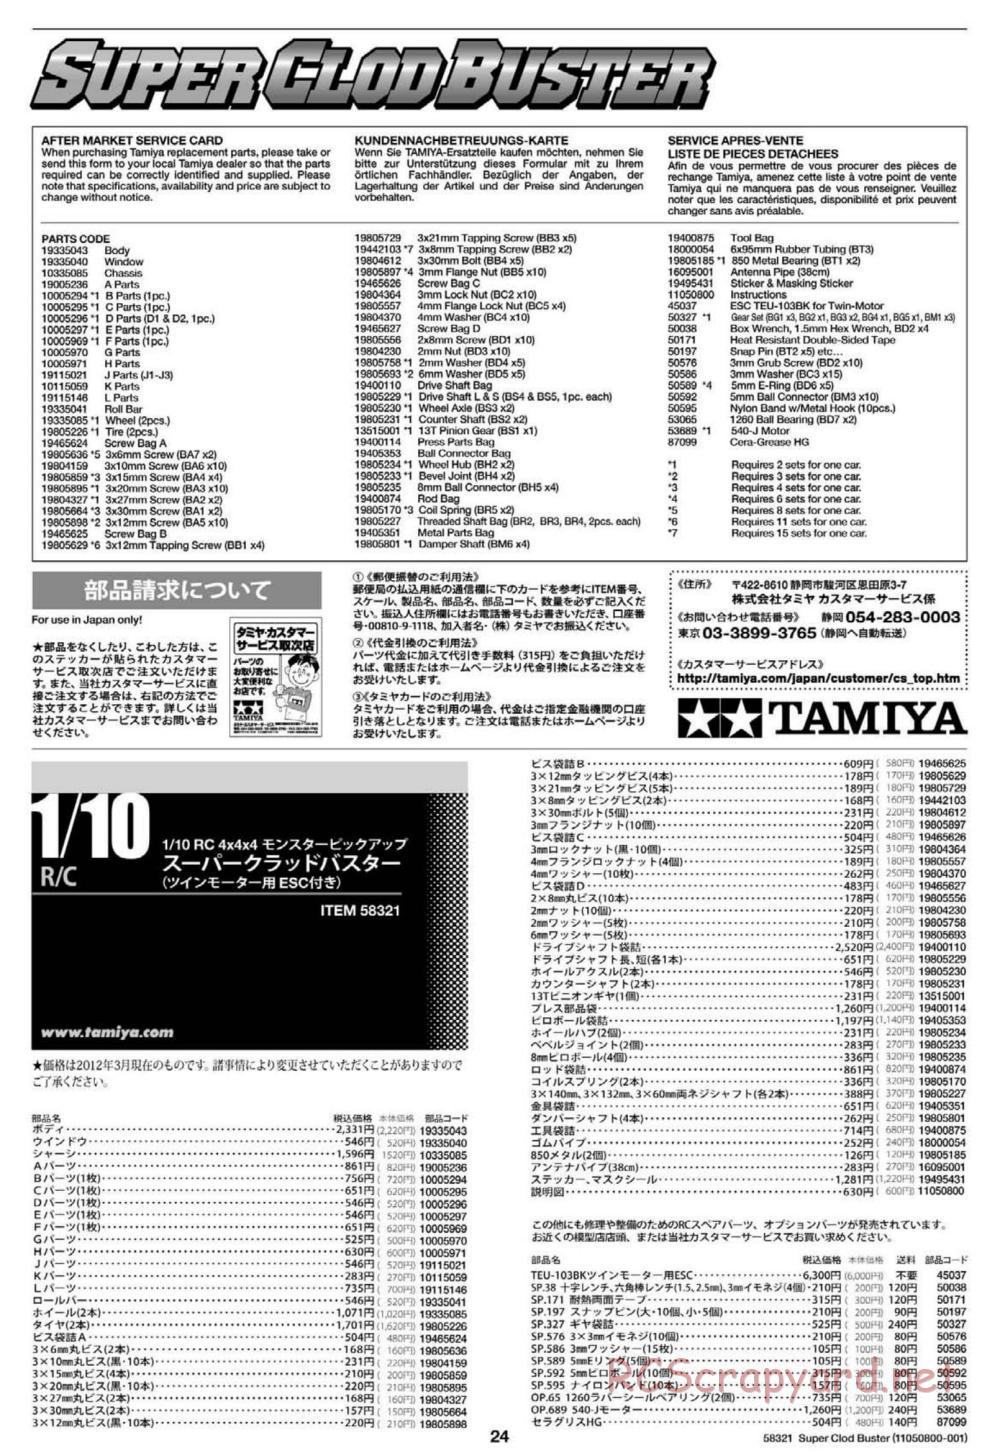 Tamiya - Super Clod Buster Chassis - Manual - Page 24